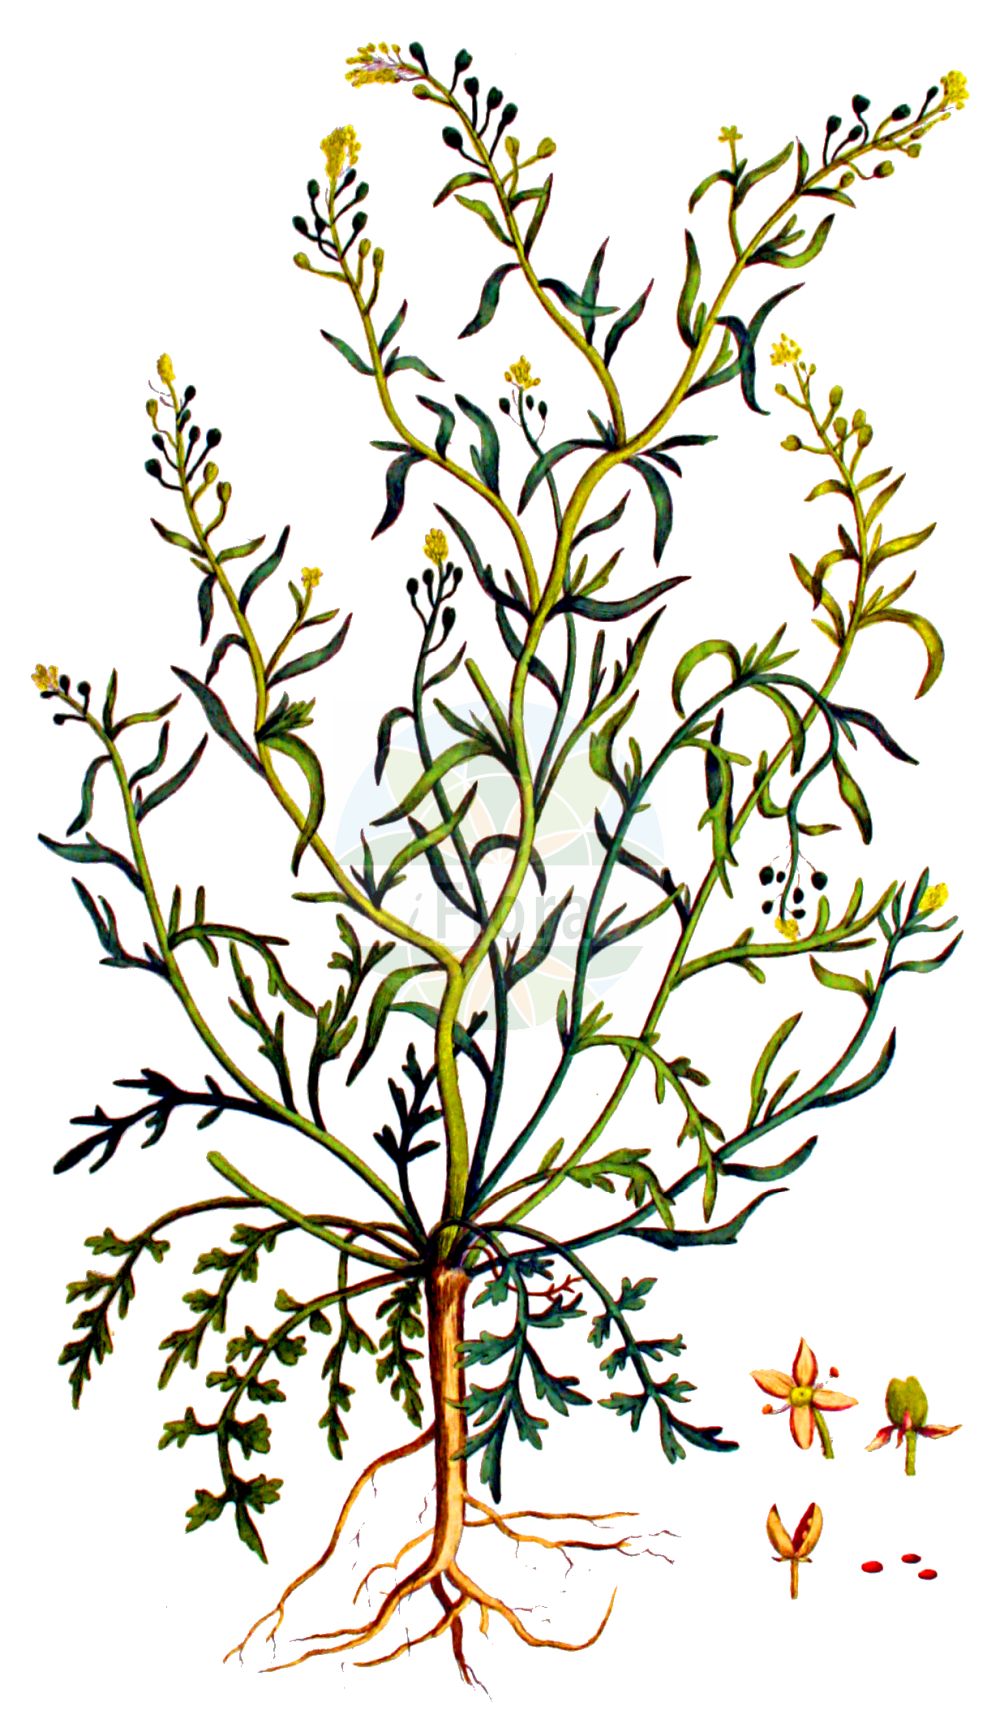 Historische Abbildung von Lepidium ruderale (Schutt-Kresse - Narrow-leaved Pepperwort). Das Bild zeigt Blatt, Bluete, Frucht und Same. ---- Historical Drawing of Lepidium ruderale (Schutt-Kresse - Narrow-leaved Pepperwort). The image is showing leaf, flower, fruit and seed.(Lepidium ruderale,Schutt-Kresse,Narrow-leaved Pepperwort,Lepidium ambiguum,Lepidium ruderale,Schutt-Kresse,Weg-Kresse,Narrow-leaved Pepperwort,Narrow-leaf Pepperweed,Roadside Pepperweed,Narrow-leaved Cress,Peppercress,Rubbish Pepperwort,Lepidium,Kresse,Pepperweed,Brassicaceae,Kreuzblütler,Cabbage family,Blatt,Bluete,Frucht,Same,leaf,flower,fruit,seed,Kops (1800-1934))